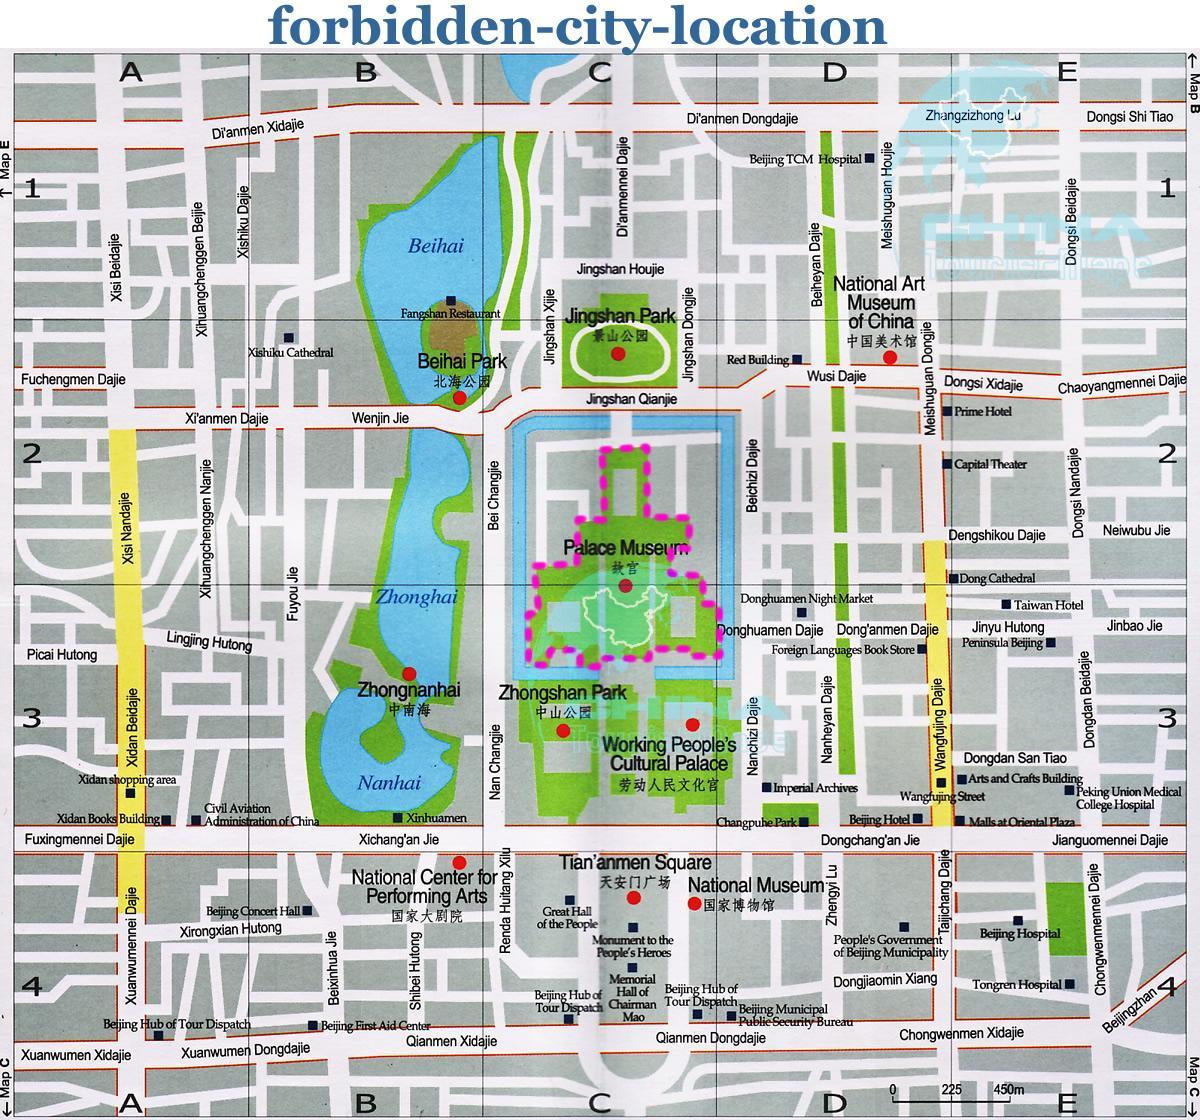 зураг хориотой хотын нарийвчилсан газрын зураг